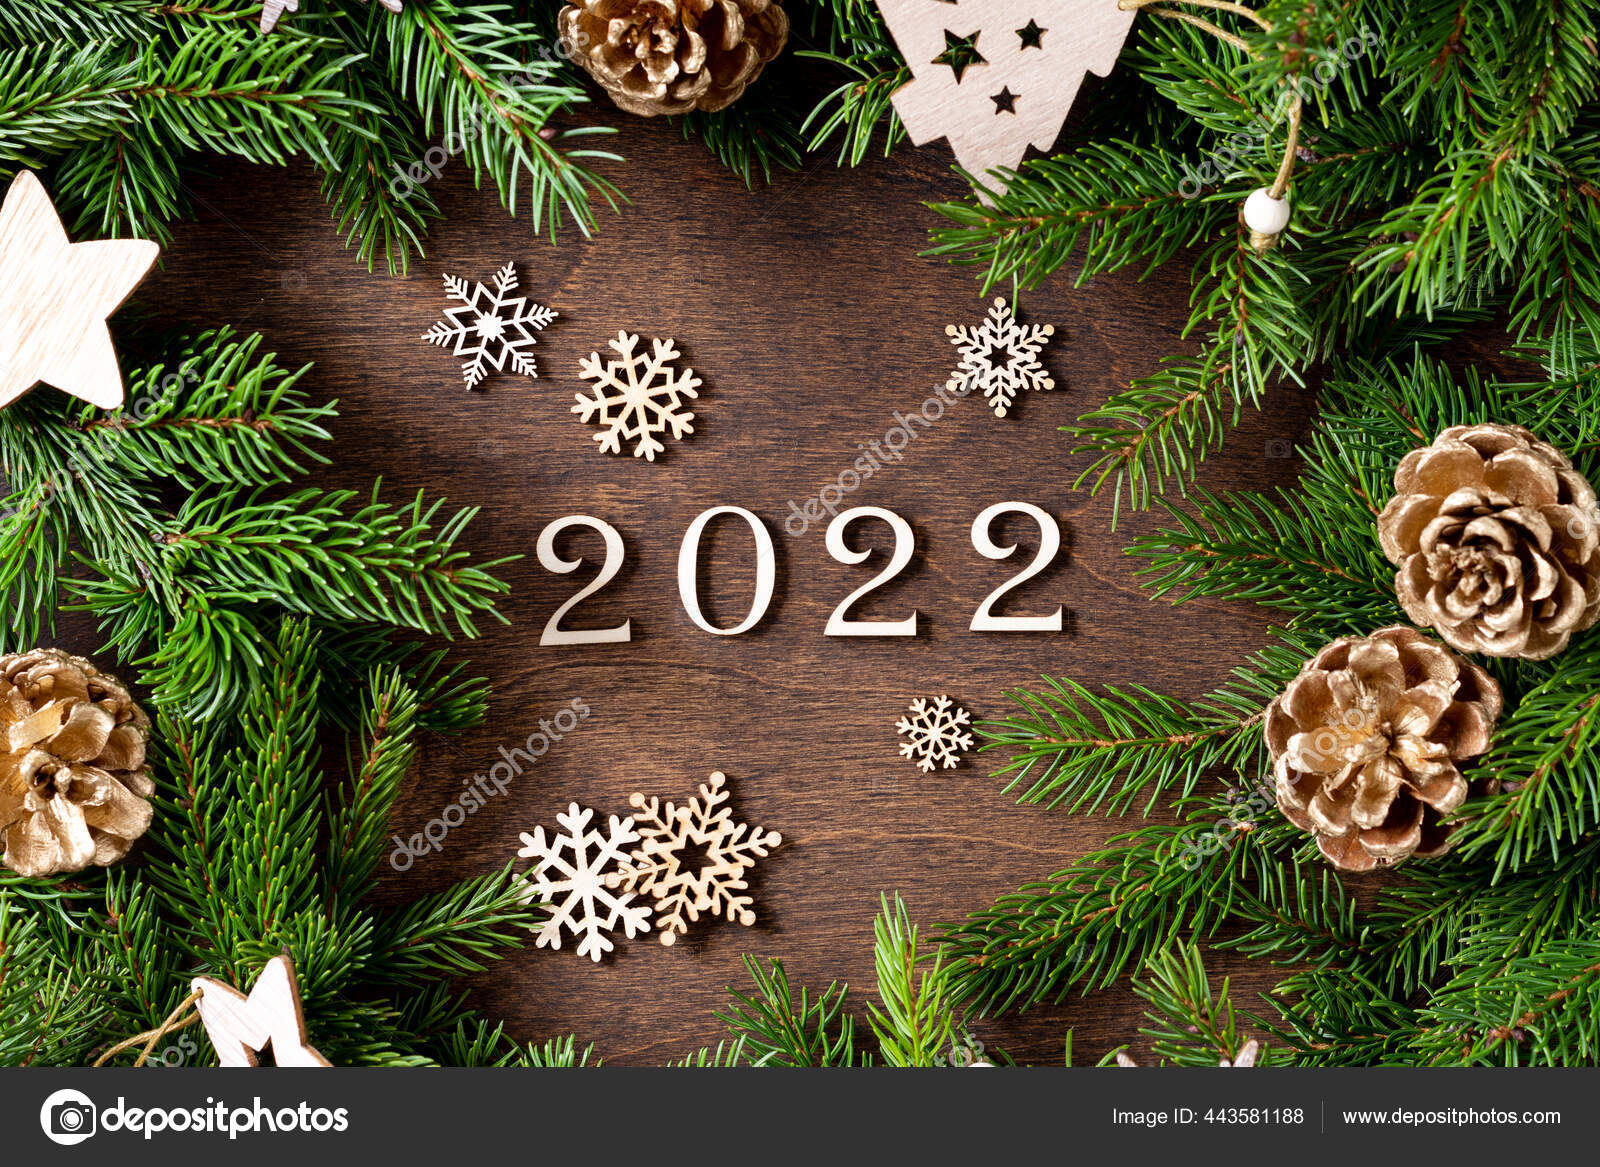 Năm mới 2022 bằng gỗ tuyệt đẹp được đặt trên nền hình nền Giáng sinh sẽ mang đến cho bạn một trải nghiệm đầy cảm hứng trong mùa lễ hội này. Sự kết hợp hoàn hảo giữa hai yếu tố này sẽ giúp cho bất kỳ ai cảm thấy lạc quan và đầy năng lượng trong năm mới qua màn hình.